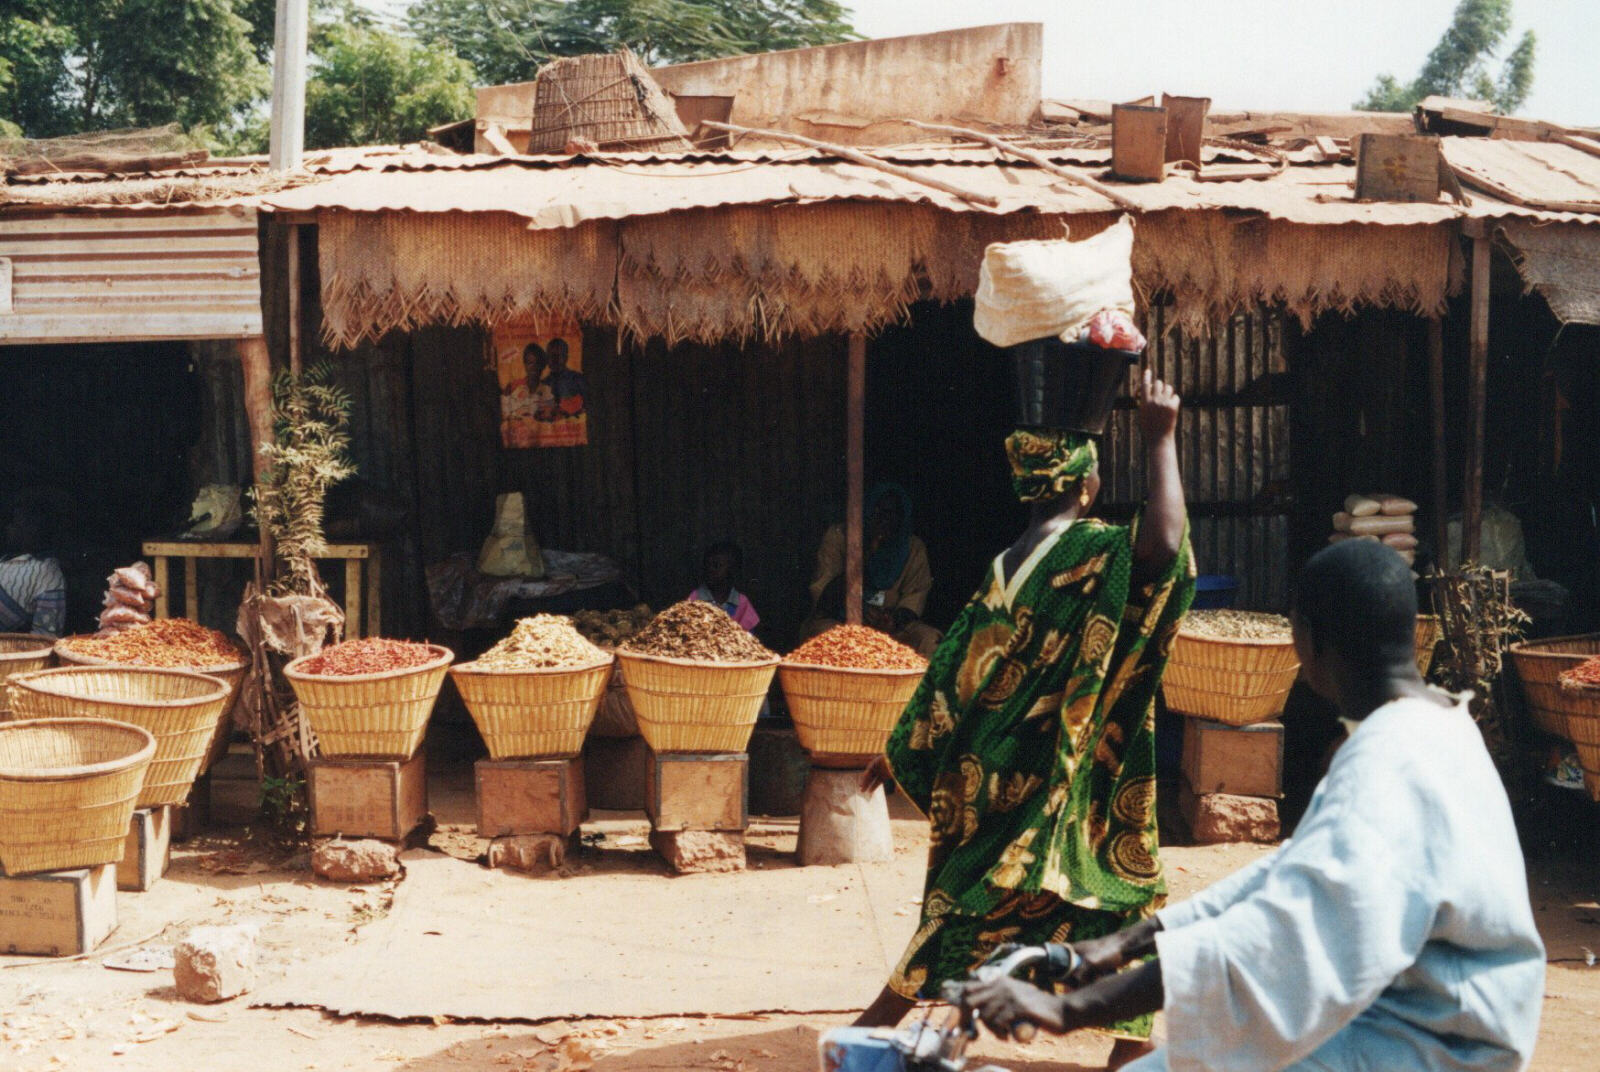 In the market at Mopti, Mali